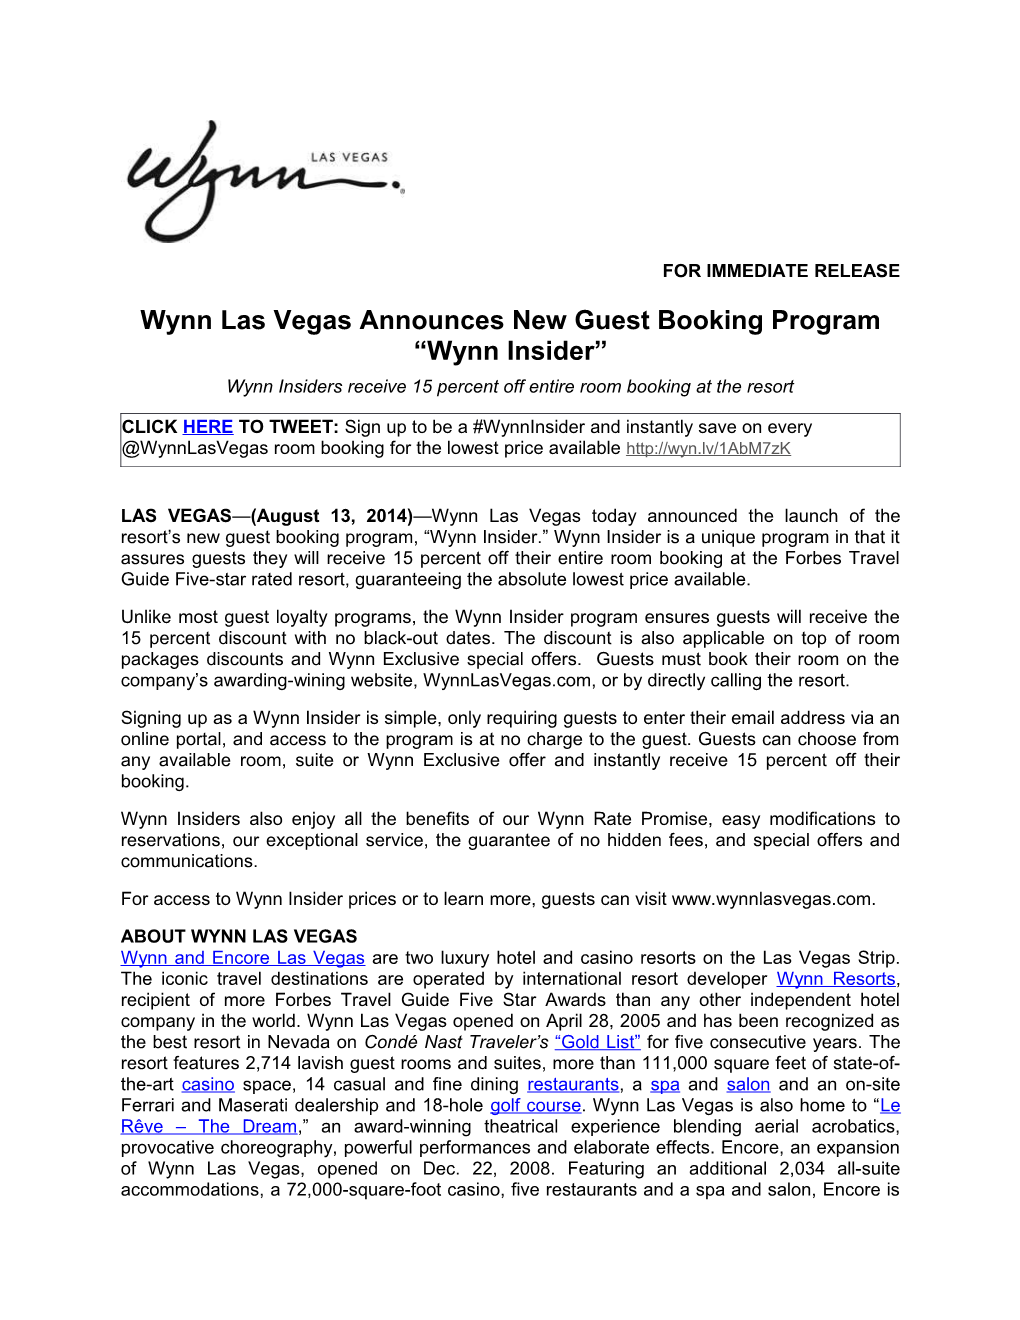 Wynn Las Vegas Announces New Guest Booking Program Wynn Insider